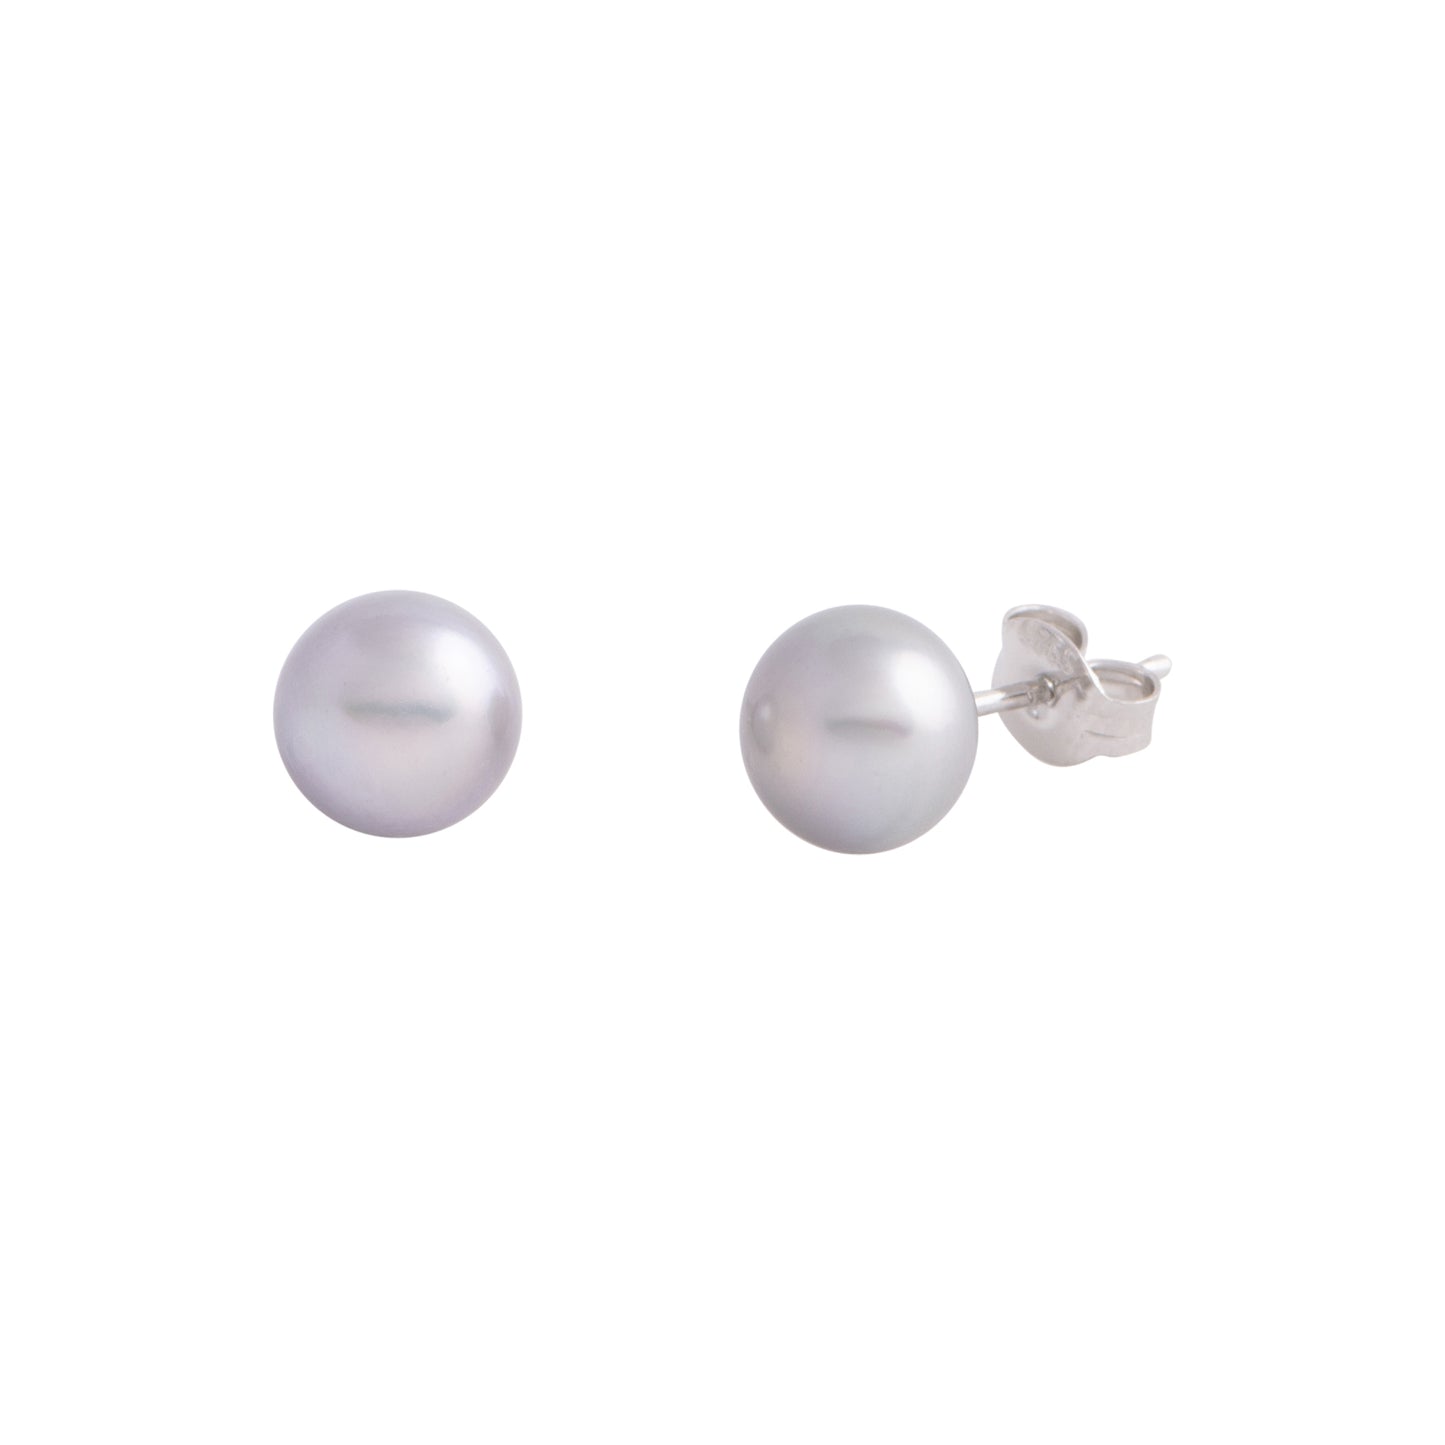 Amaya - Medium (8mm) pearl nickle-free earrings (Silver pearls)